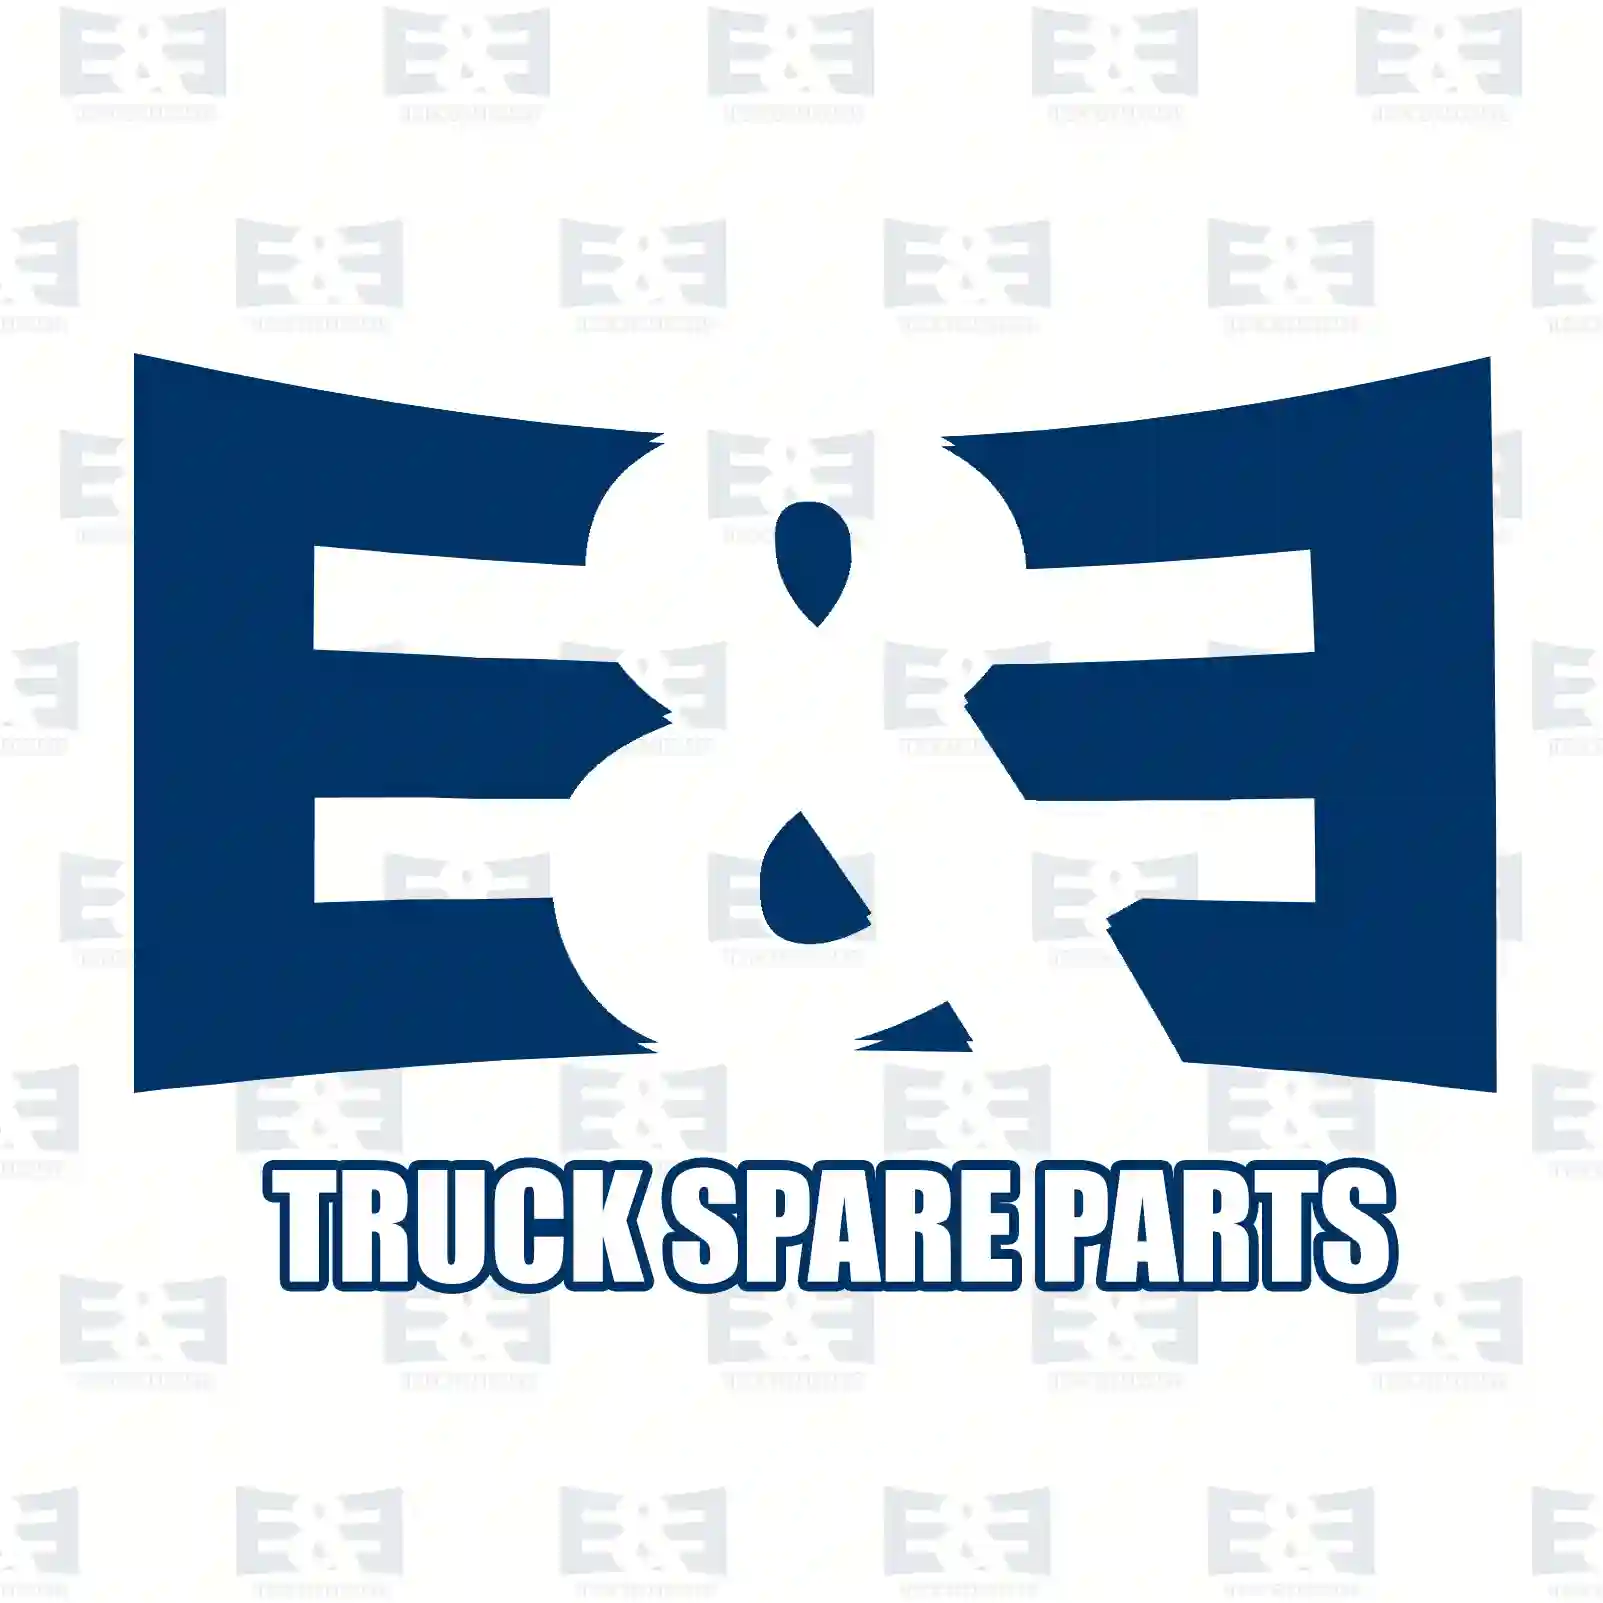 Bumper, rear, left, 2E2289735, 1637185380, 735685370, 1637185380 ||  2E2289735 E&E Truck Spare Parts | Truck Spare Parts, Auotomotive Spare Parts Bumper, rear, left, 2E2289735, 1637185380, 735685370, 1637185380 ||  2E2289735 E&E Truck Spare Parts | Truck Spare Parts, Auotomotive Spare Parts